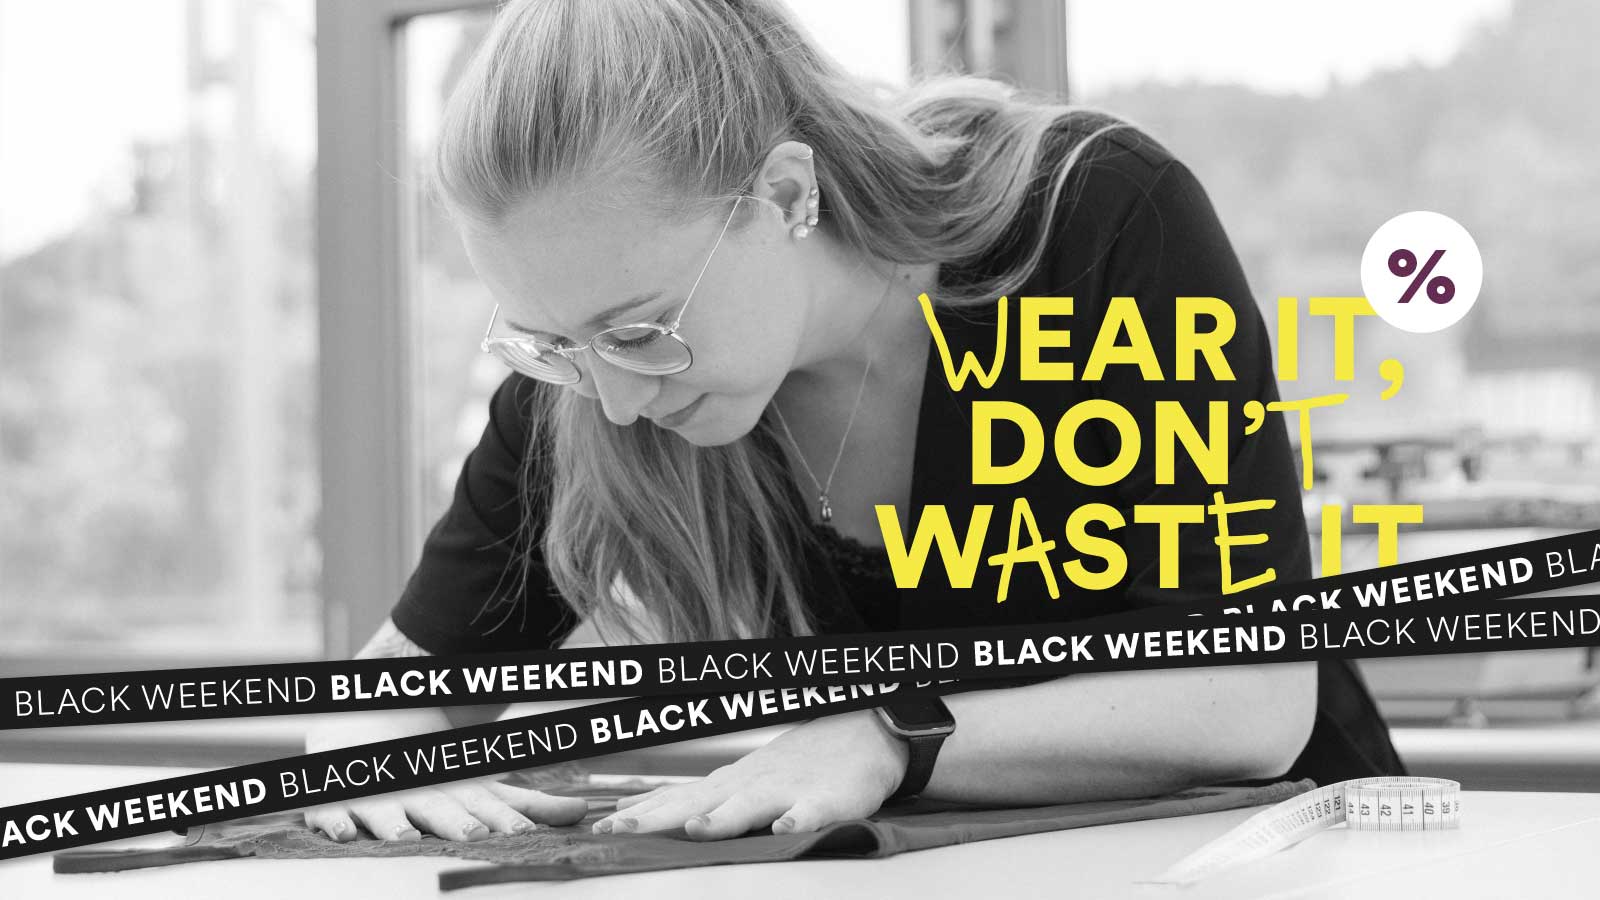 Unsere Black Weekend Aktion: Wear it, don't waste it | mey®